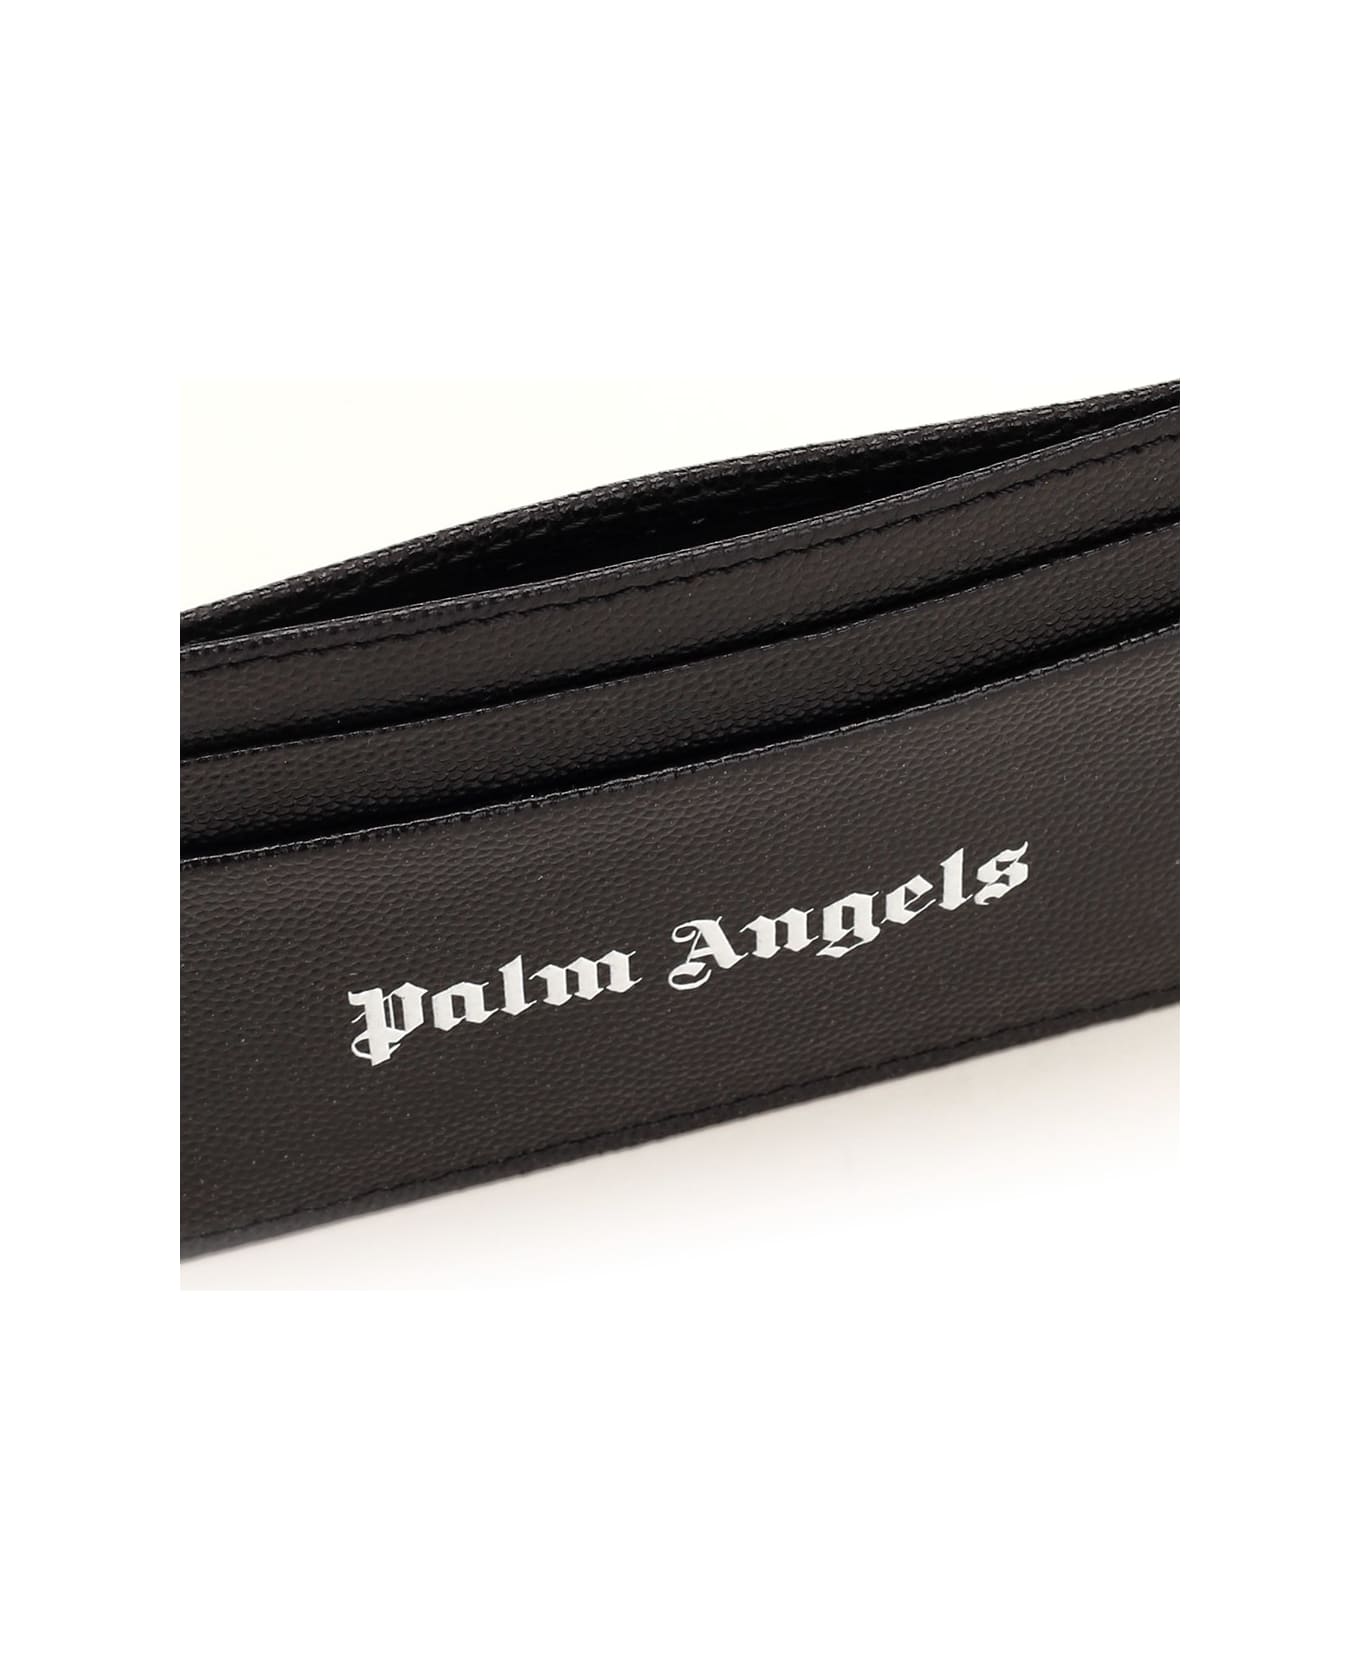 Palm Angels Logo Card Holder - Black